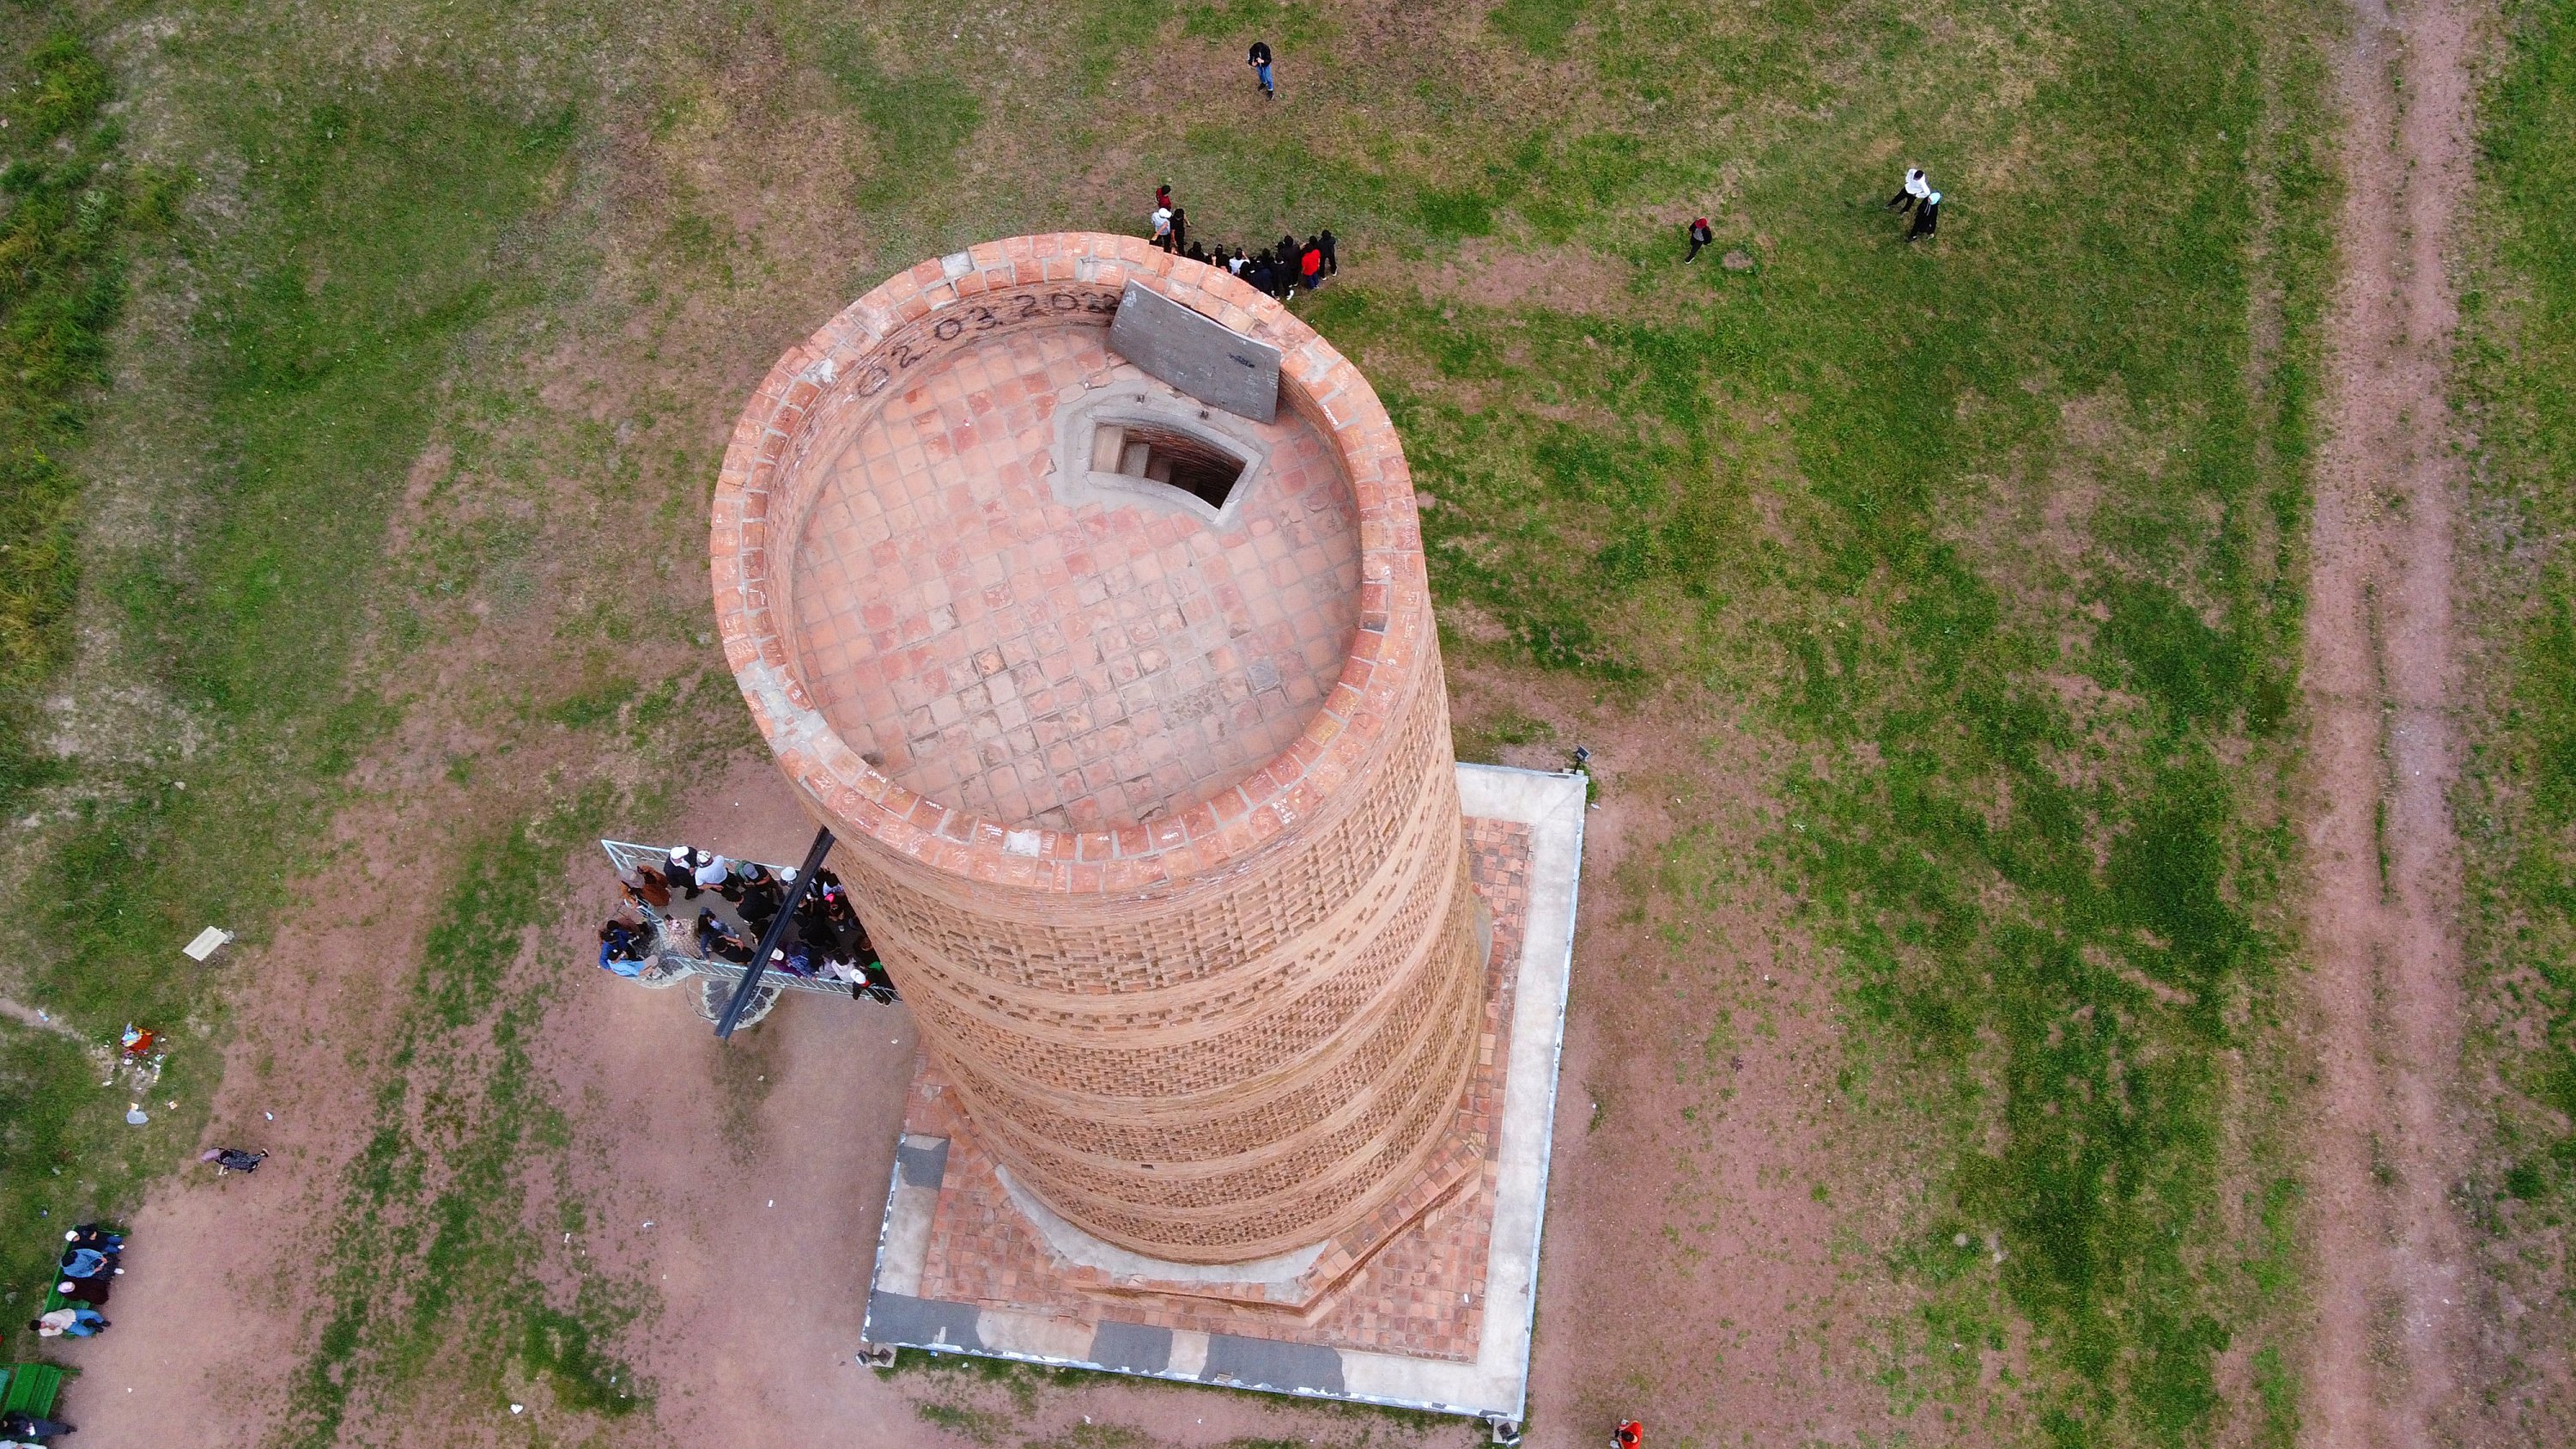 Menara Burana berbentuk bulat di Kyrgyzstan sering dikunjungi wisatawan lokal dan asing karena sejarah dan arsitekturnya, Bishkek, Kirgistan, 25 Mei 2022. (AA Photo)